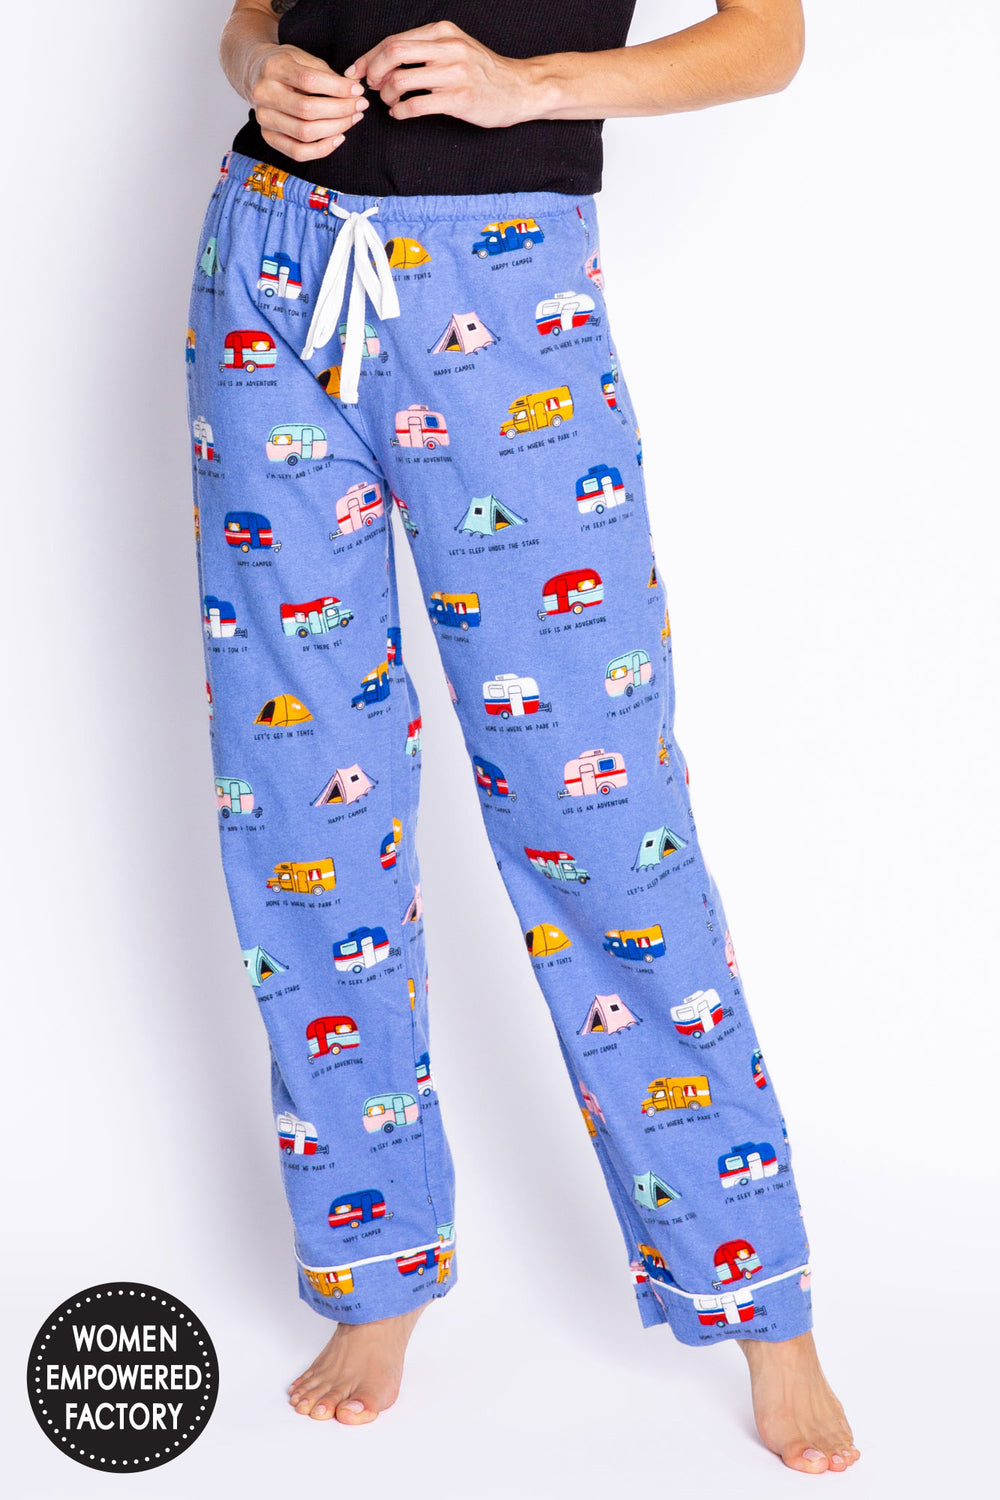 PJ Salvage pants, flannel (4 patterns/colors)